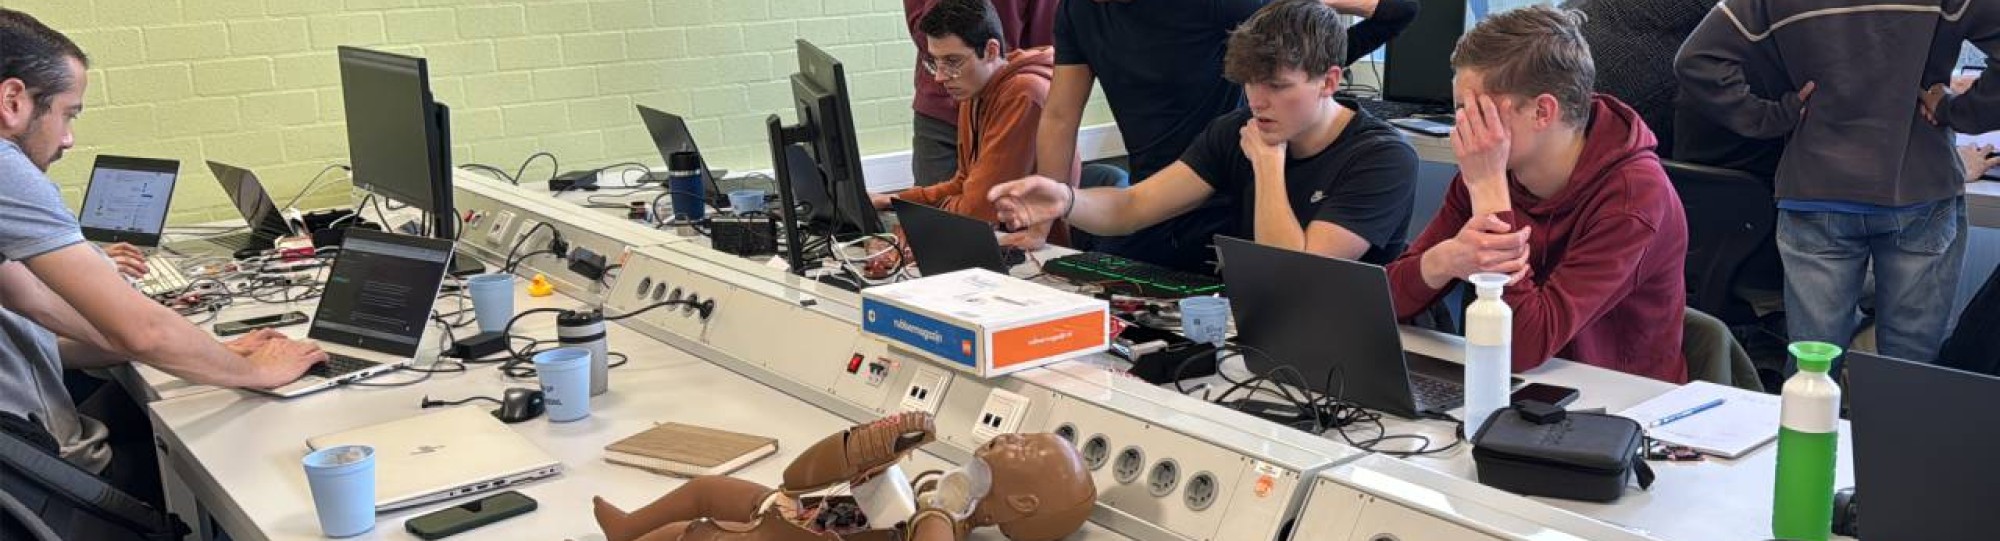 Sfeerbeeld van de hackathon voor het Utrechts UMC Wilhelmina Kinderziekenhuis als afsluiting van een semester  programmeren bij Embedded Systems Engineering tijdens de Event Week van HAN Engineering en Automotive